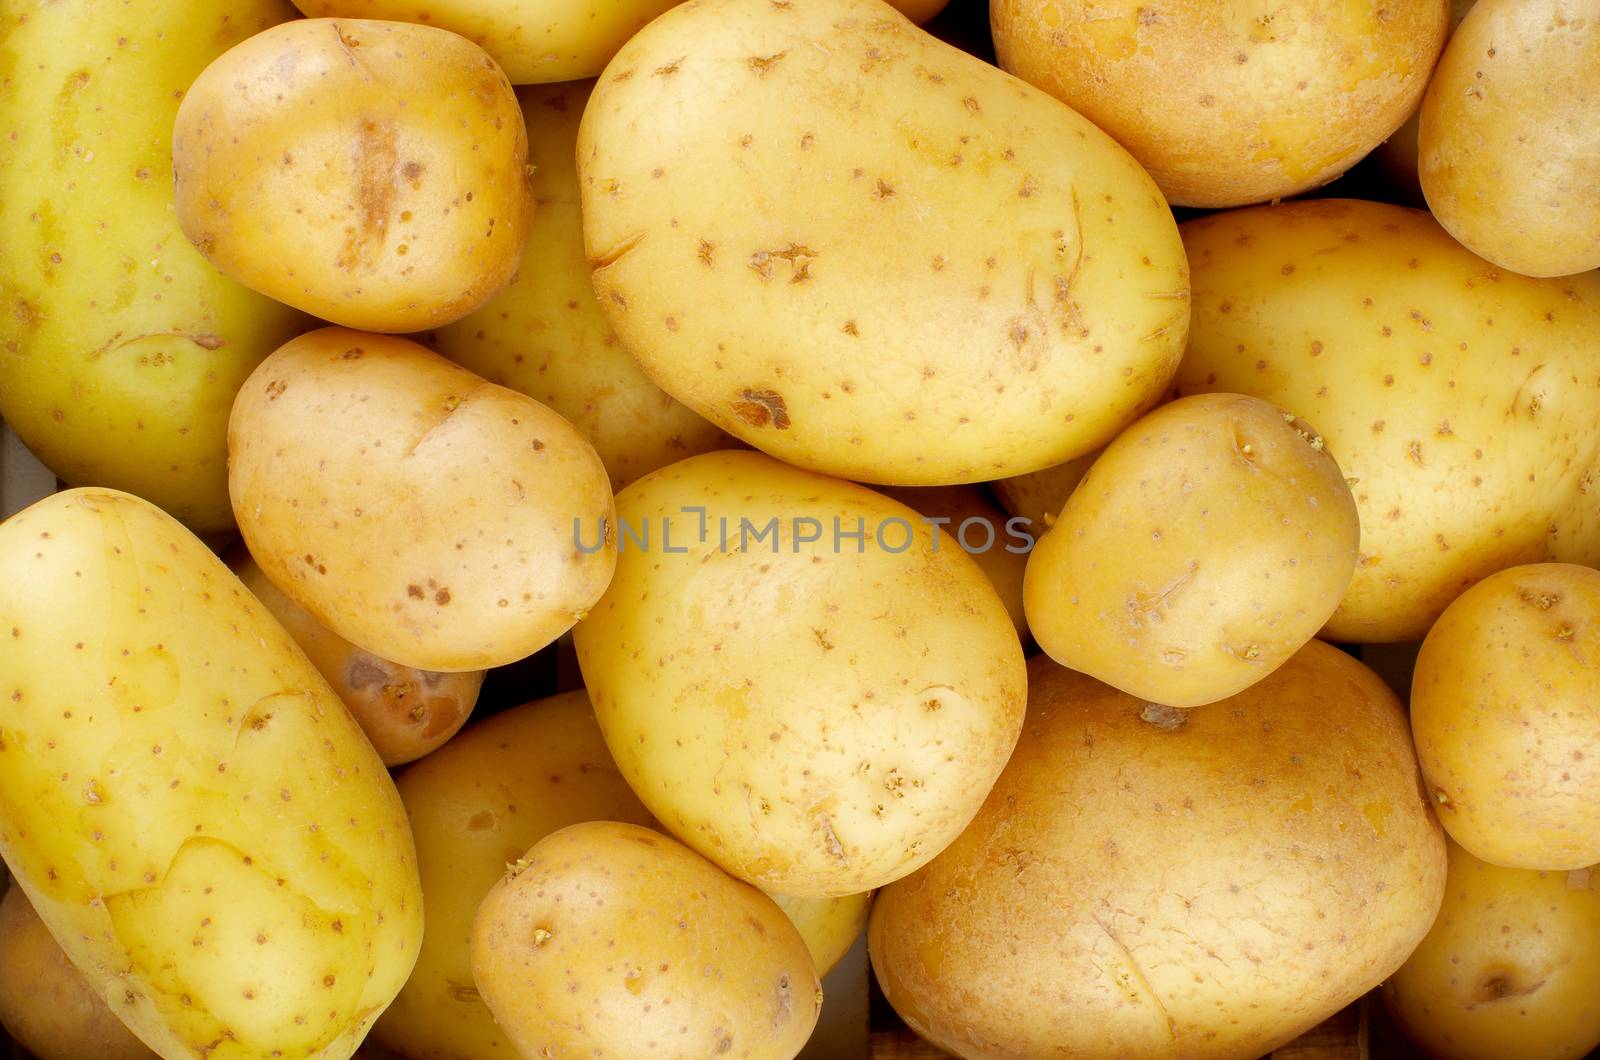 Yellow Potatoes Background by zhekos